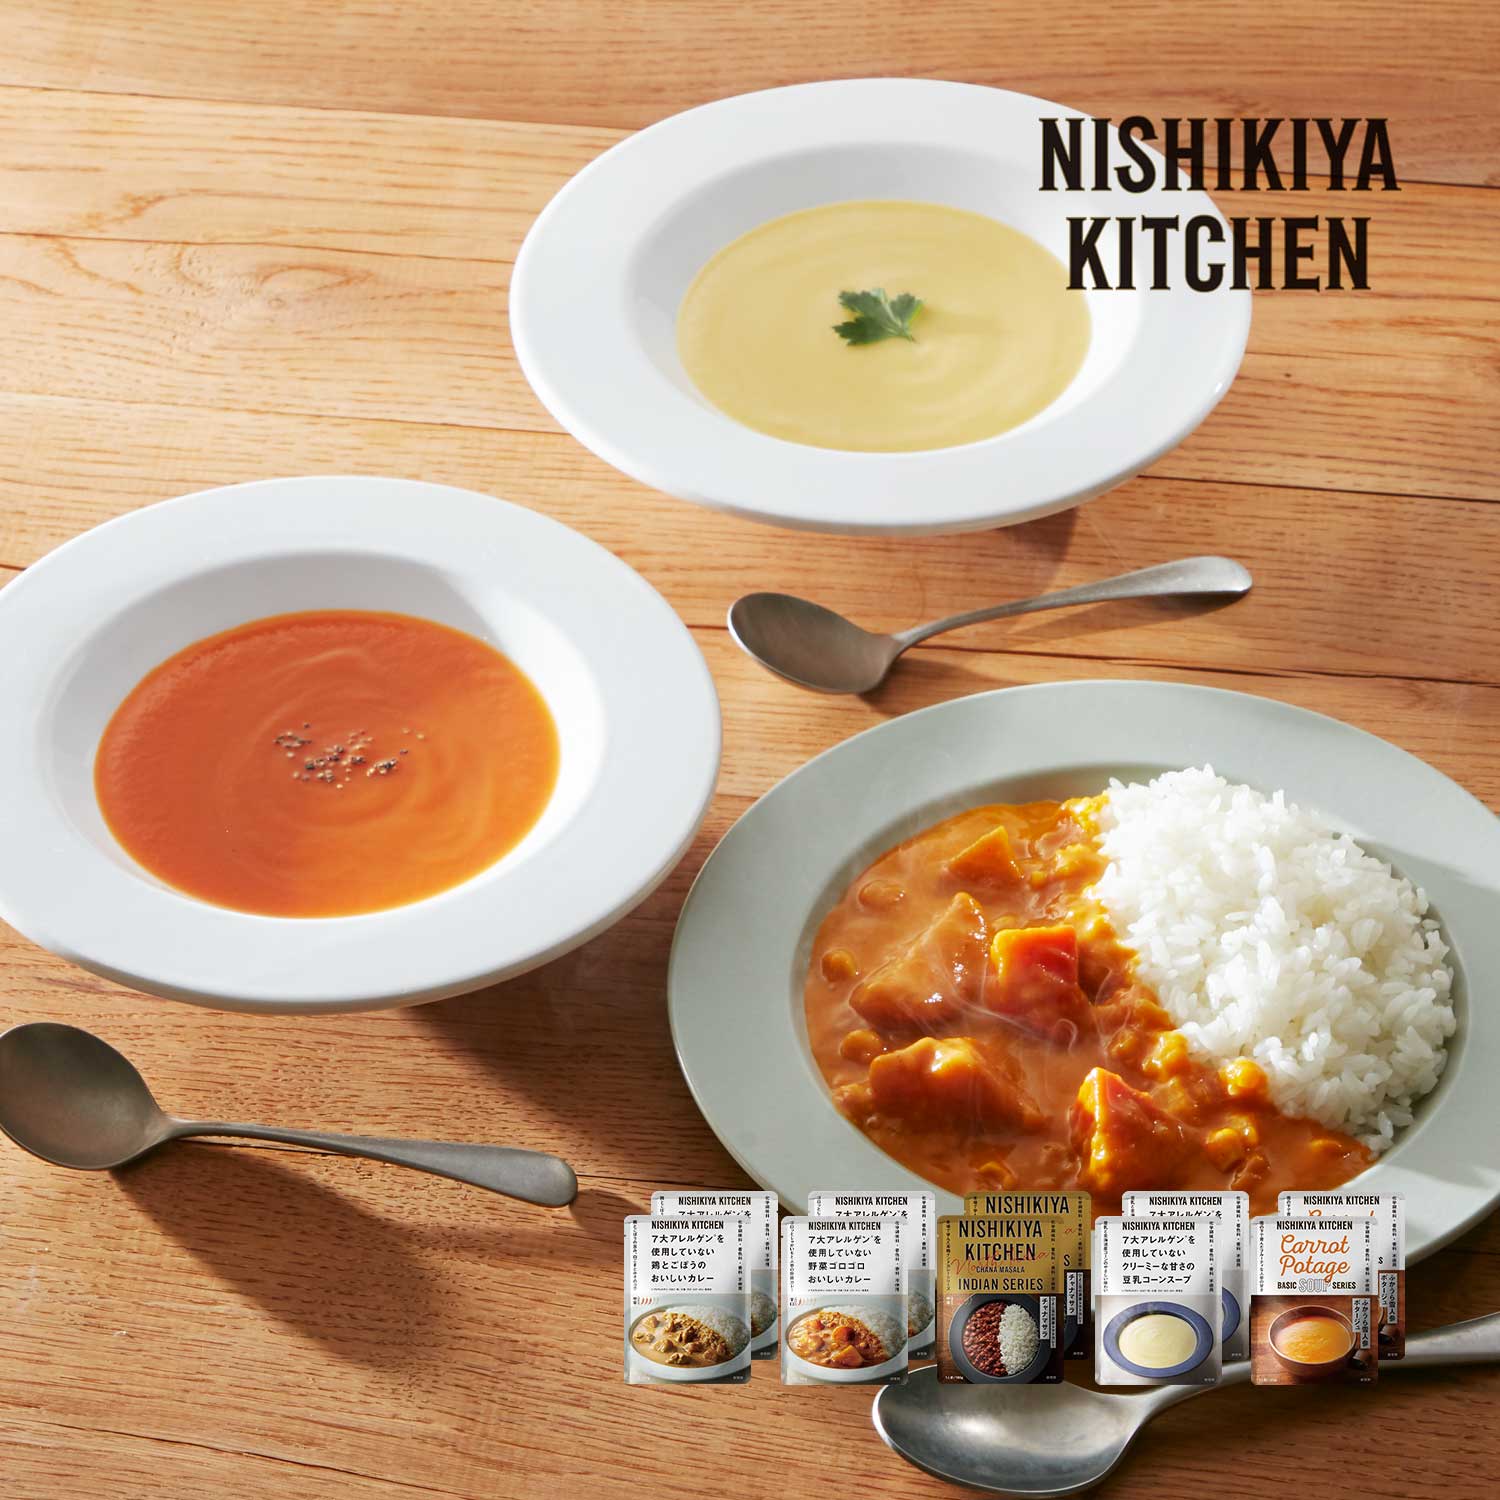 【NISHIKIYA KITCHEN】特定原材料7品目に配慮したカレー & スープセット